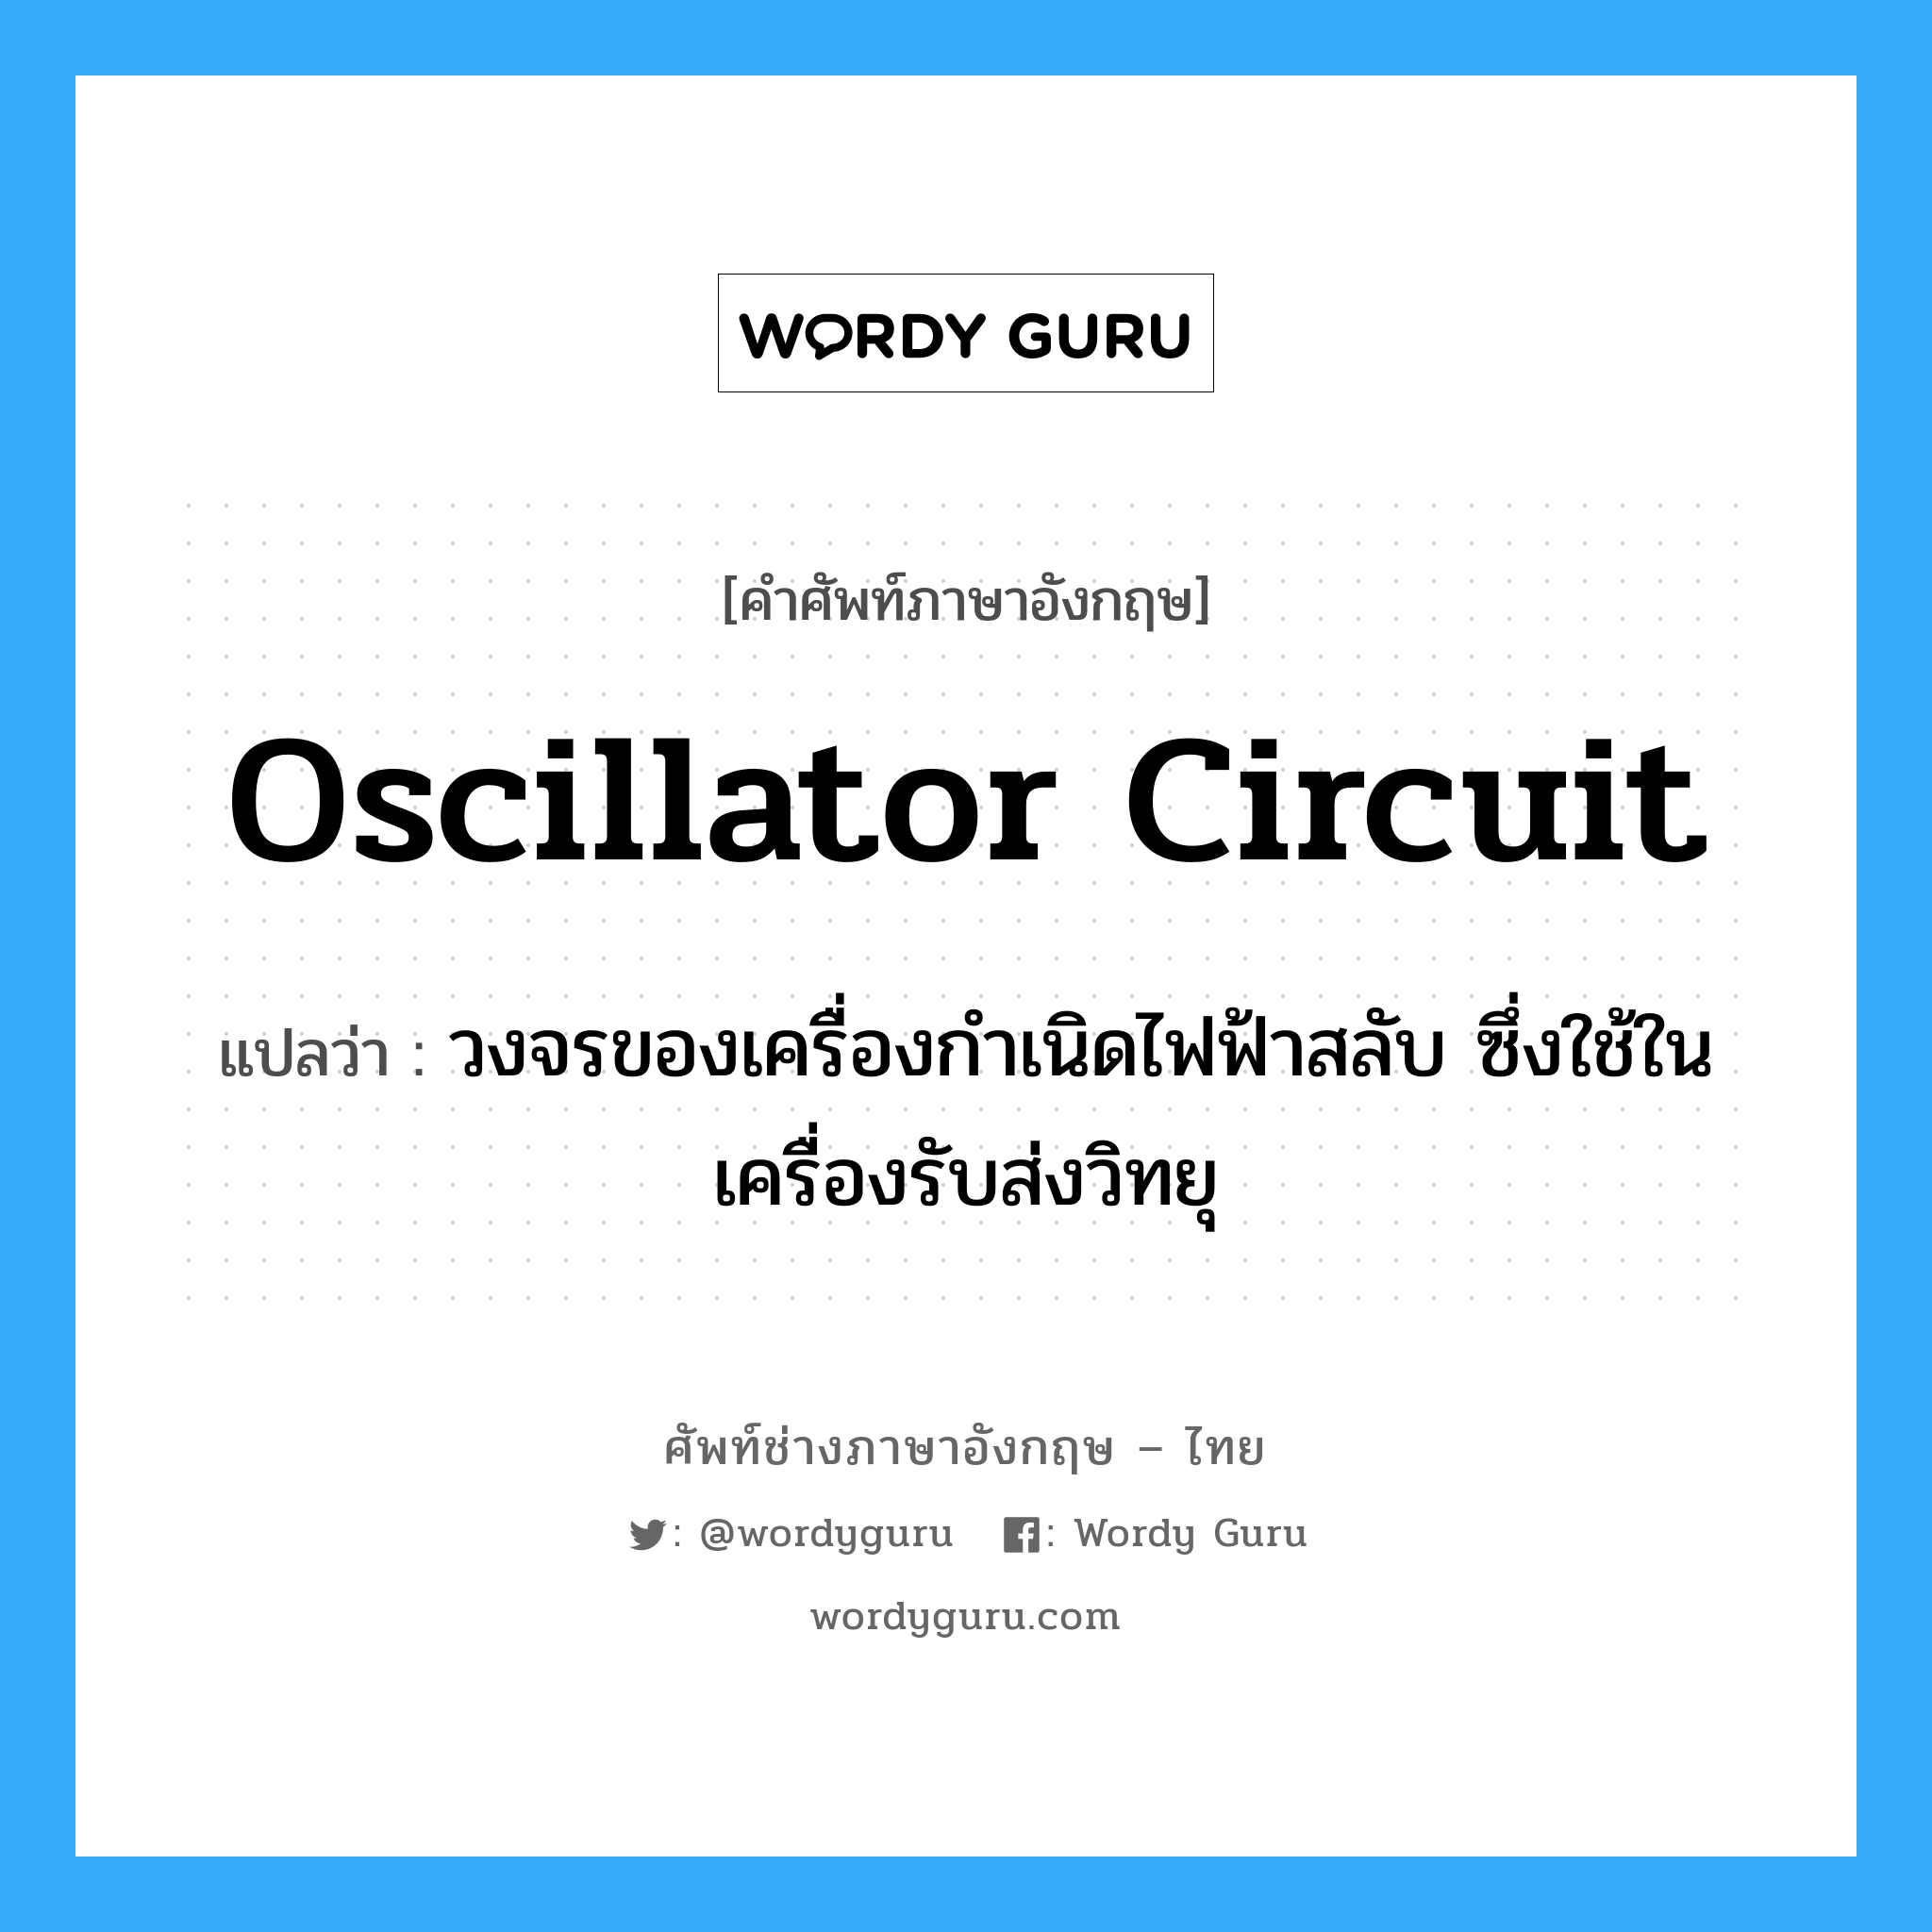 oscillator circuit แปลว่า?, คำศัพท์ช่างภาษาอังกฤษ - ไทย oscillator circuit คำศัพท์ภาษาอังกฤษ oscillator circuit แปลว่า วงจรของเครื่องกำเนิดไฟฟ้าสลับ ซึ่งใช้ในเครื่องรับส่งวิทยุ